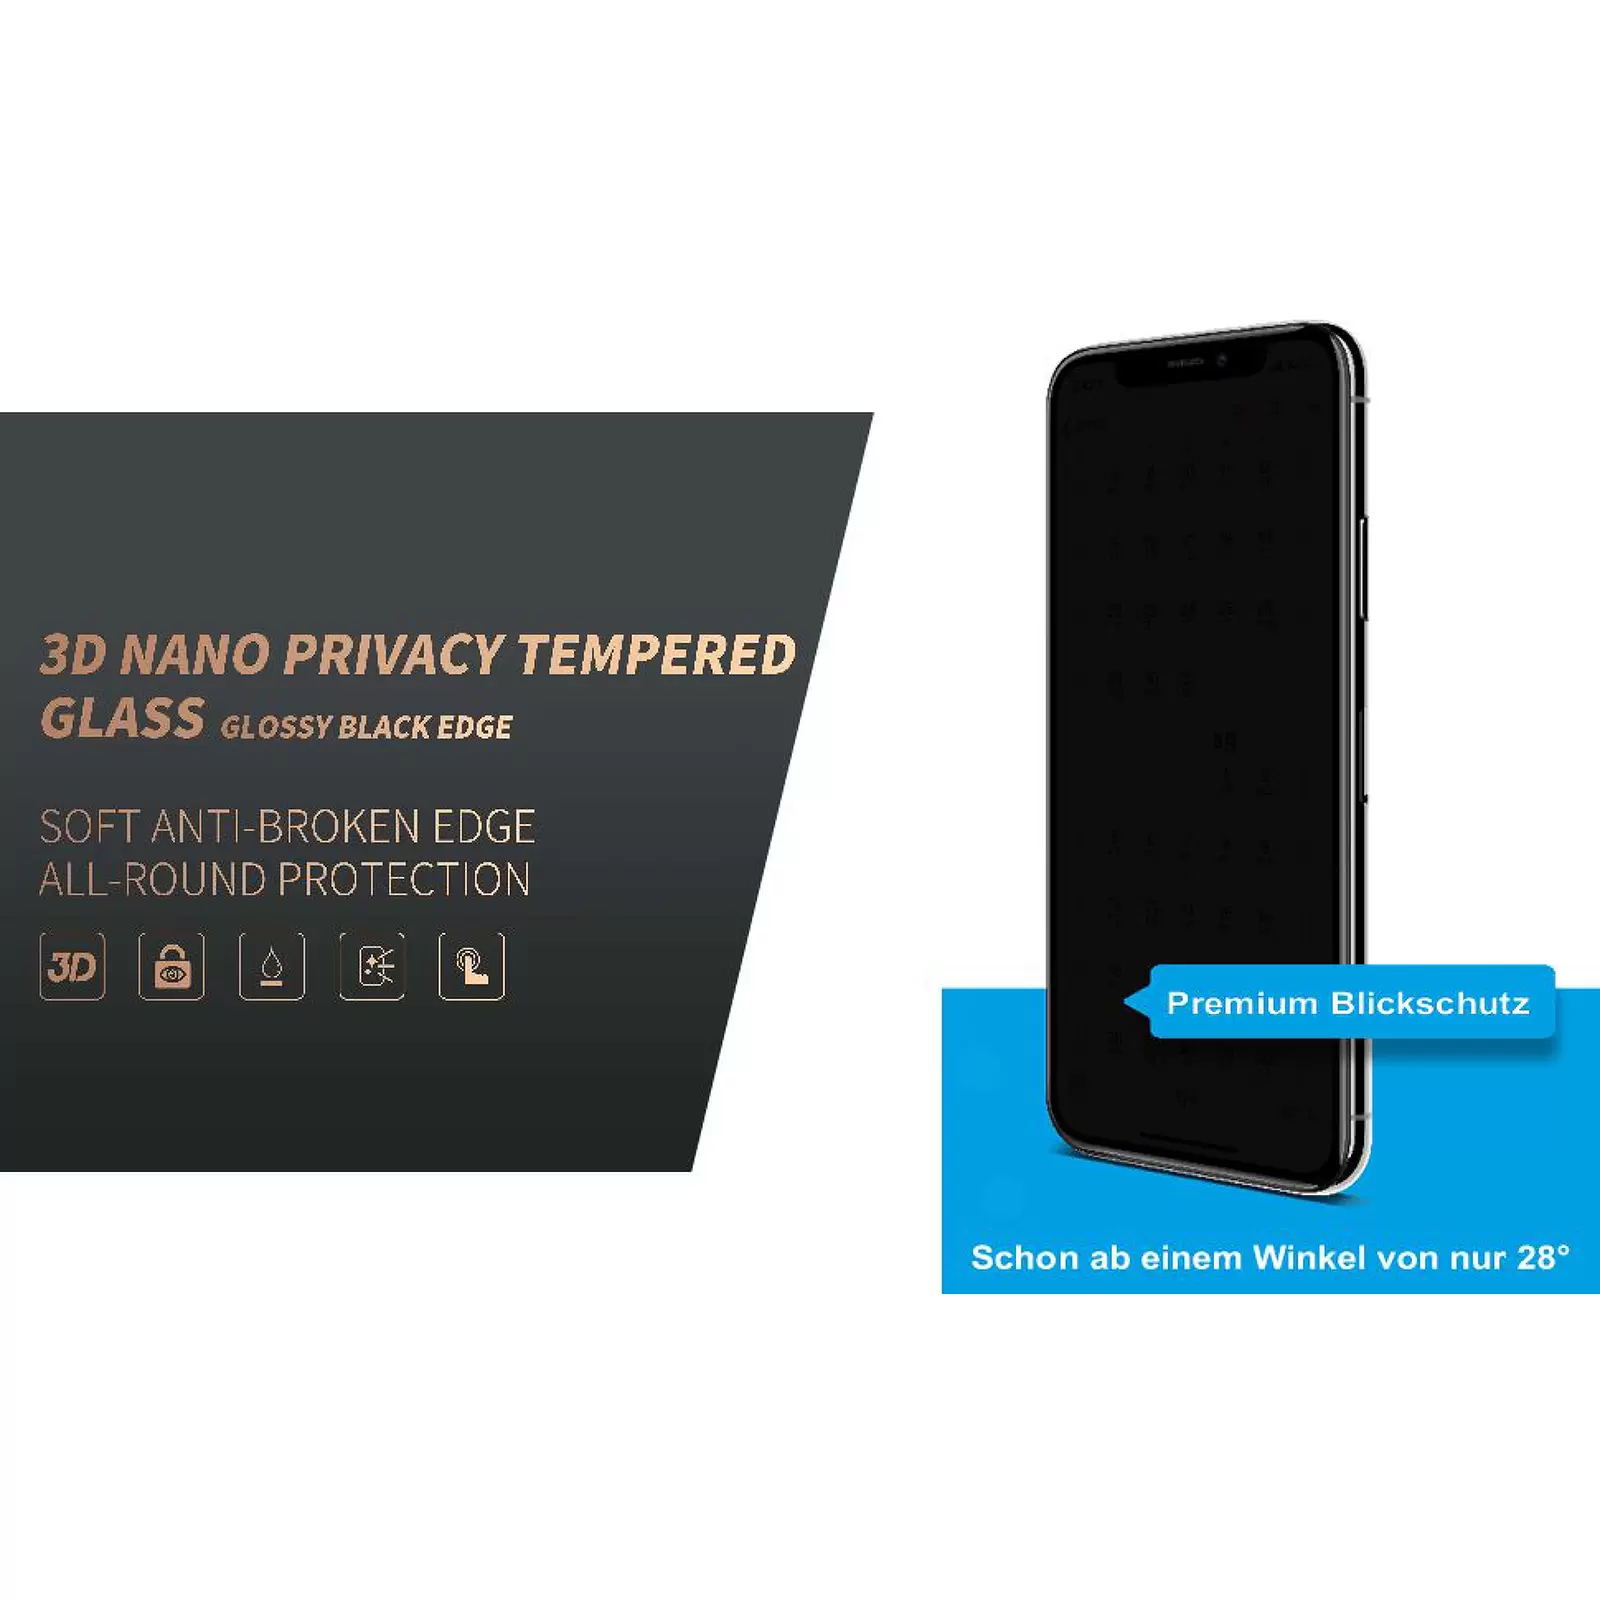 Display-Schutzglas, Blickschutz-Folie, Sichtschutz, Panzerfolie für iPhone XR/iPhone 11